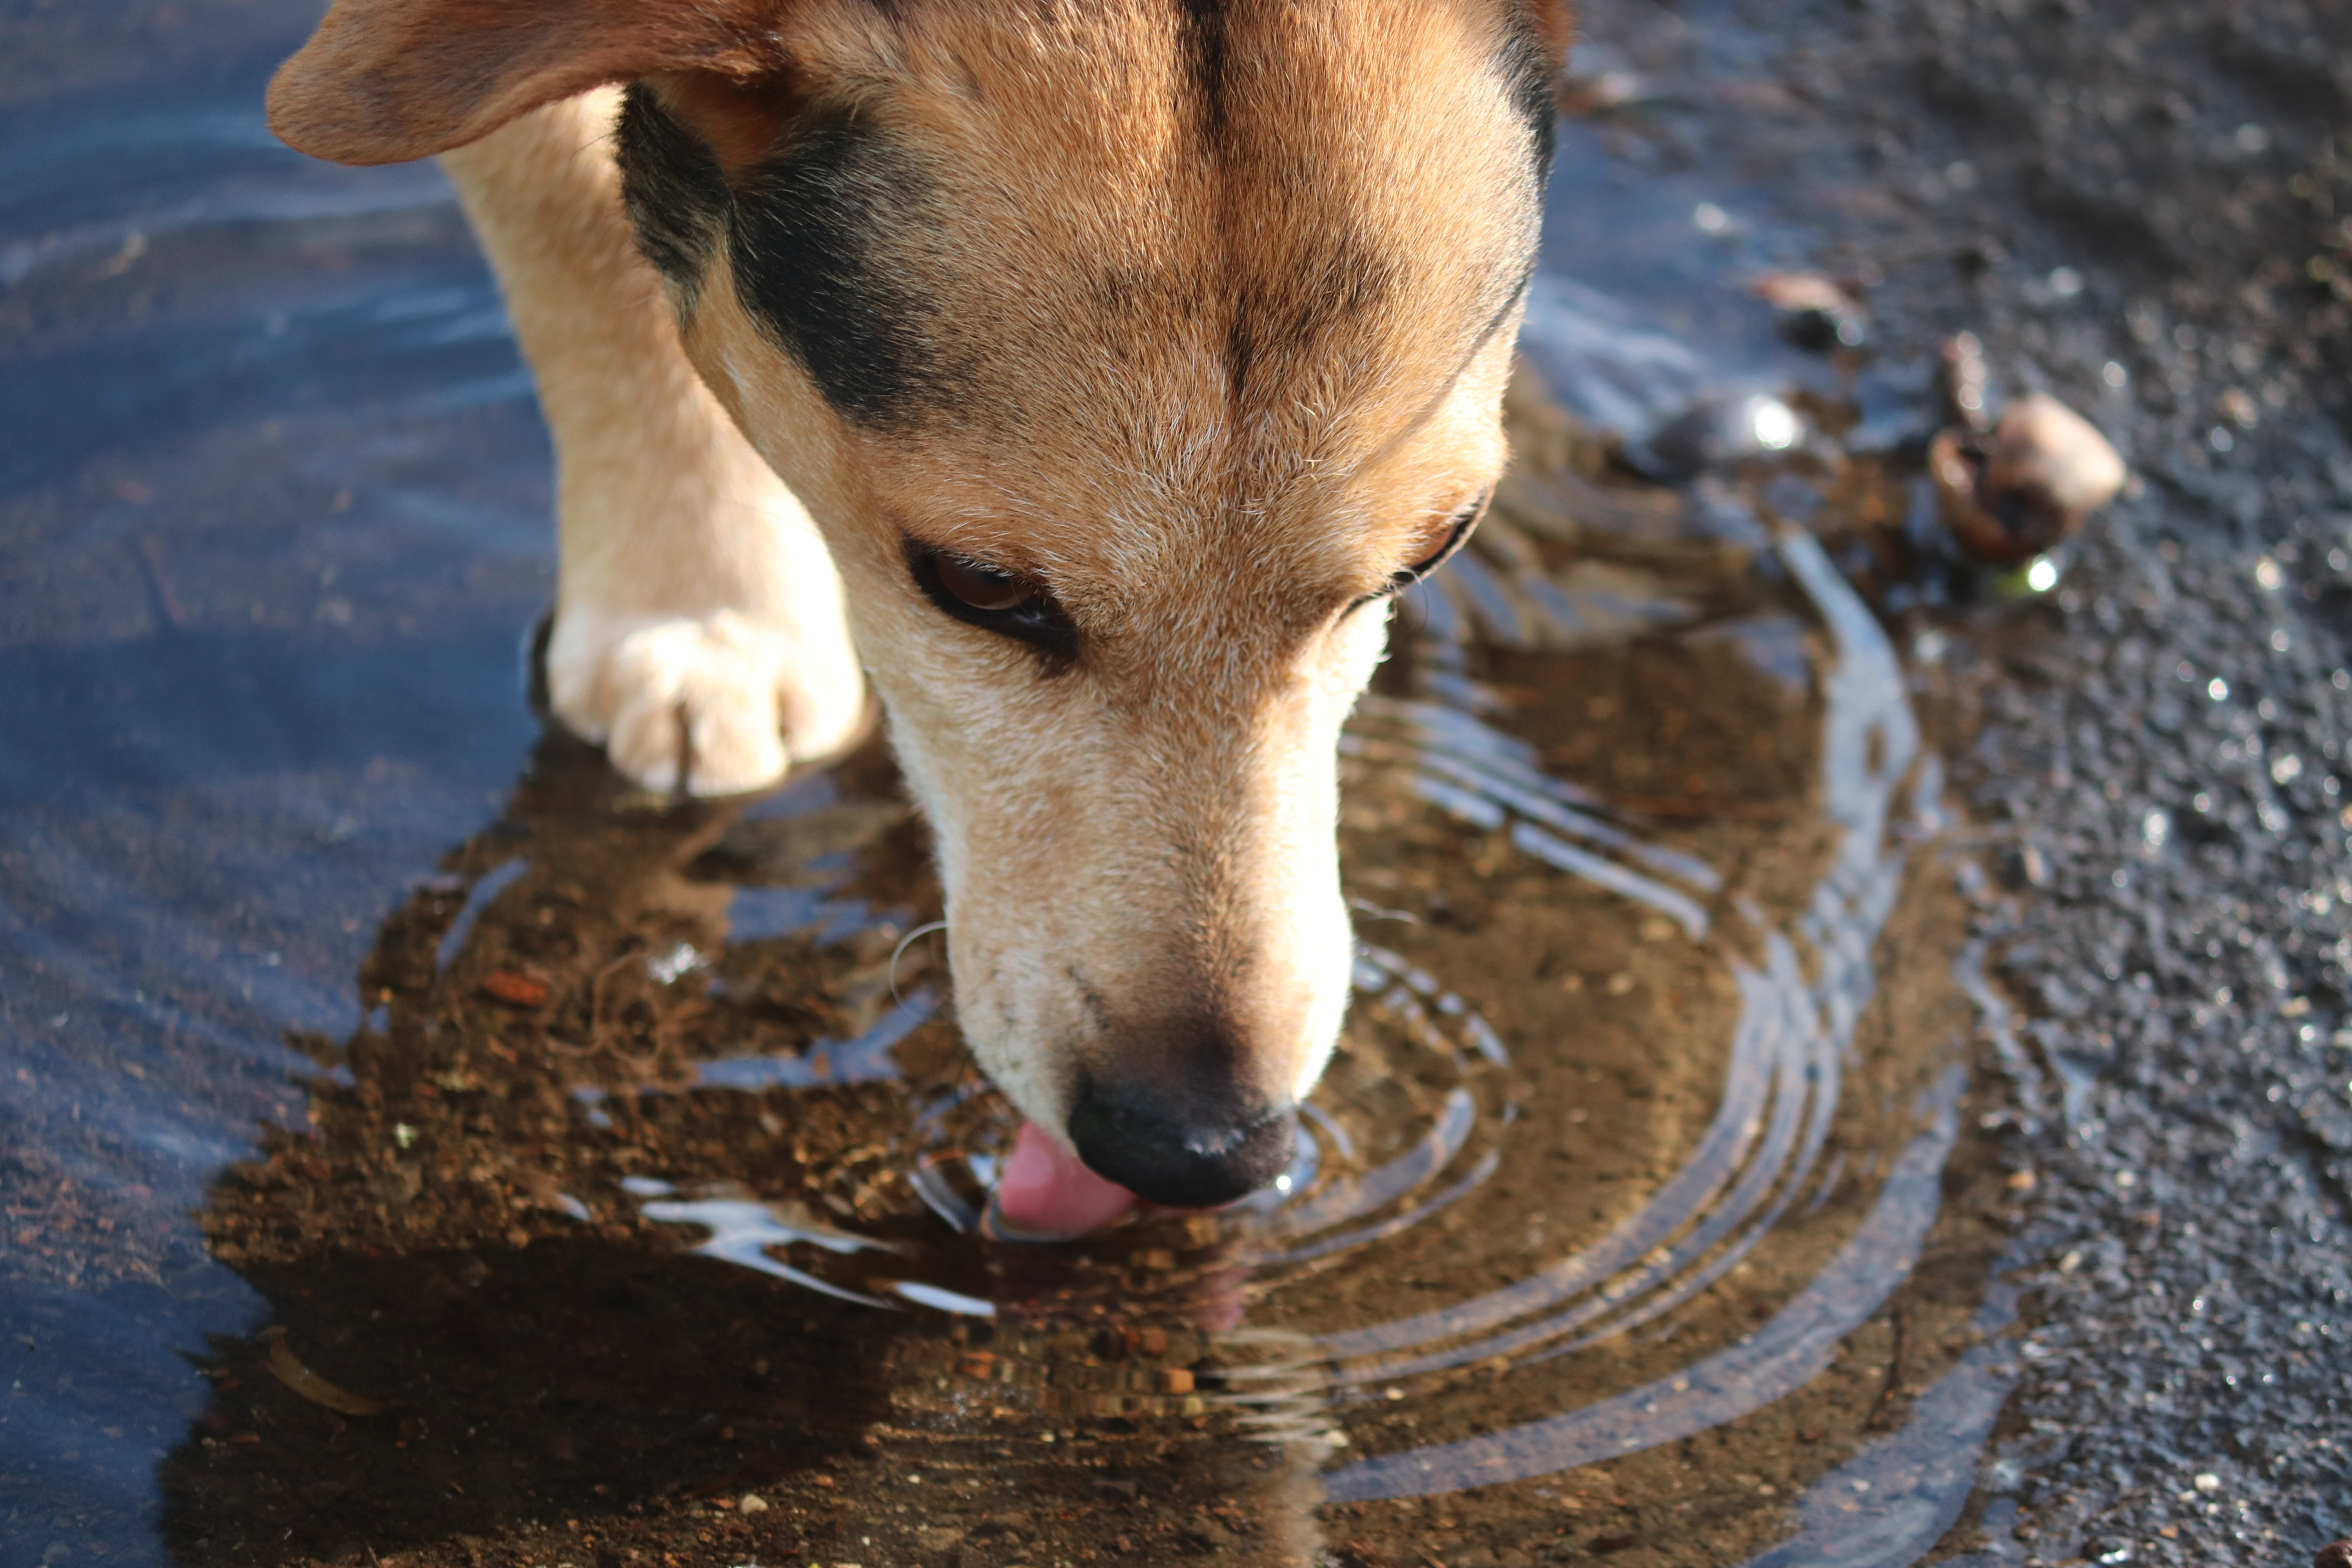 Ein Hund trinkt Wasser aus einer Pfütze auf dem Boden